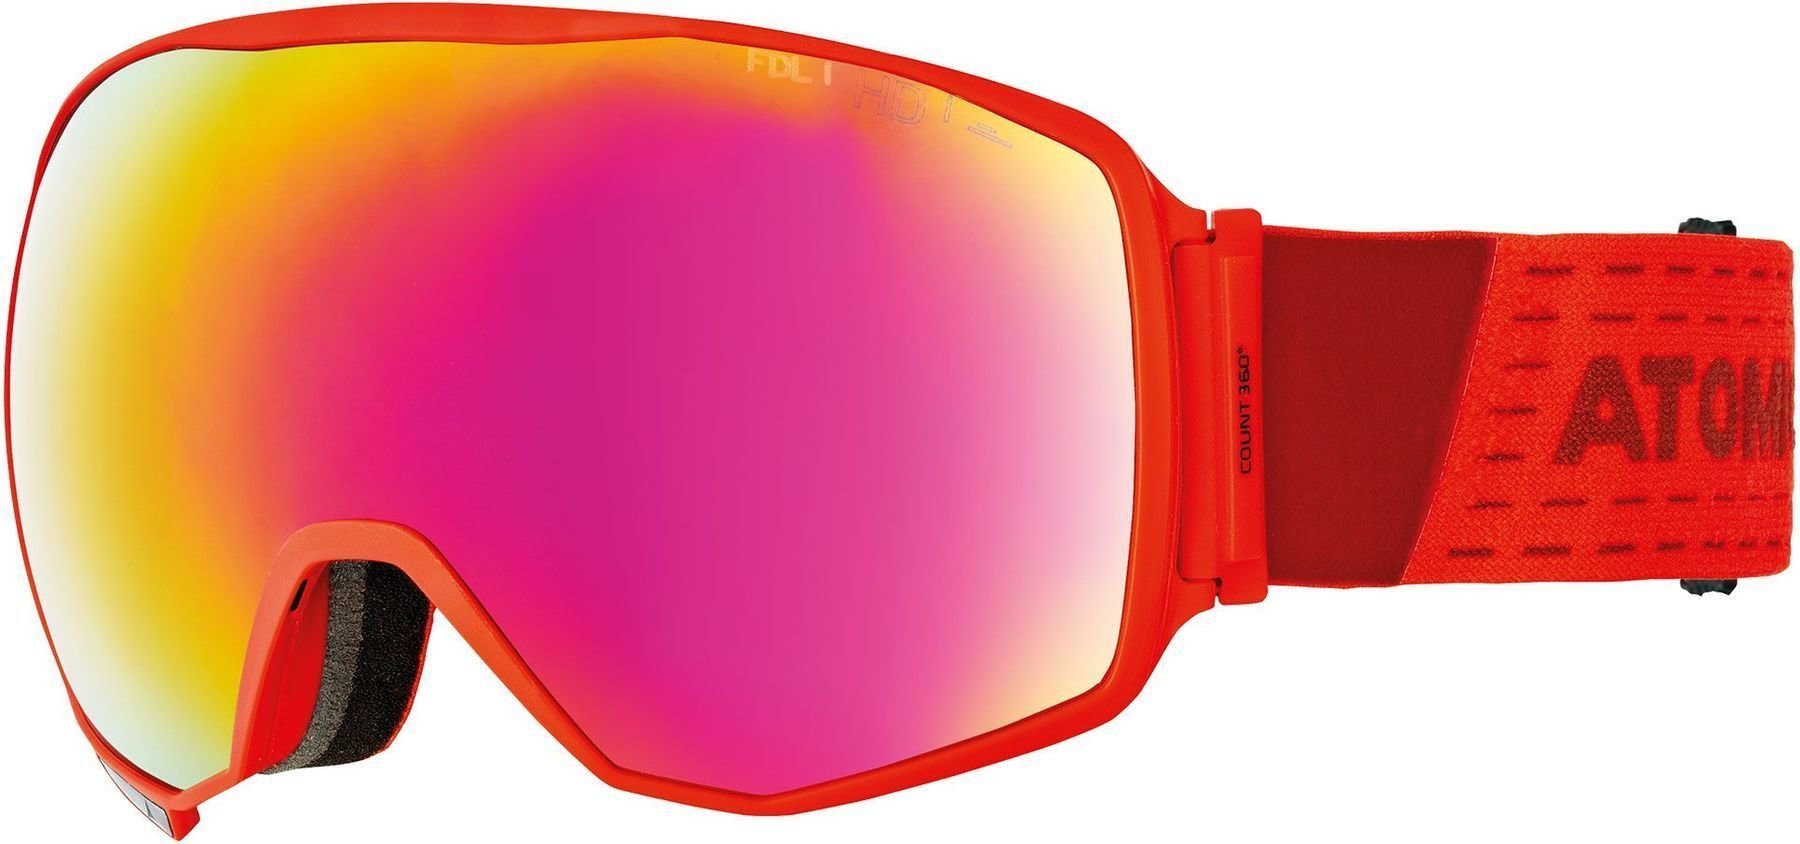 Gafas de esquí Atomic Count 360° HD RS Red 19/20